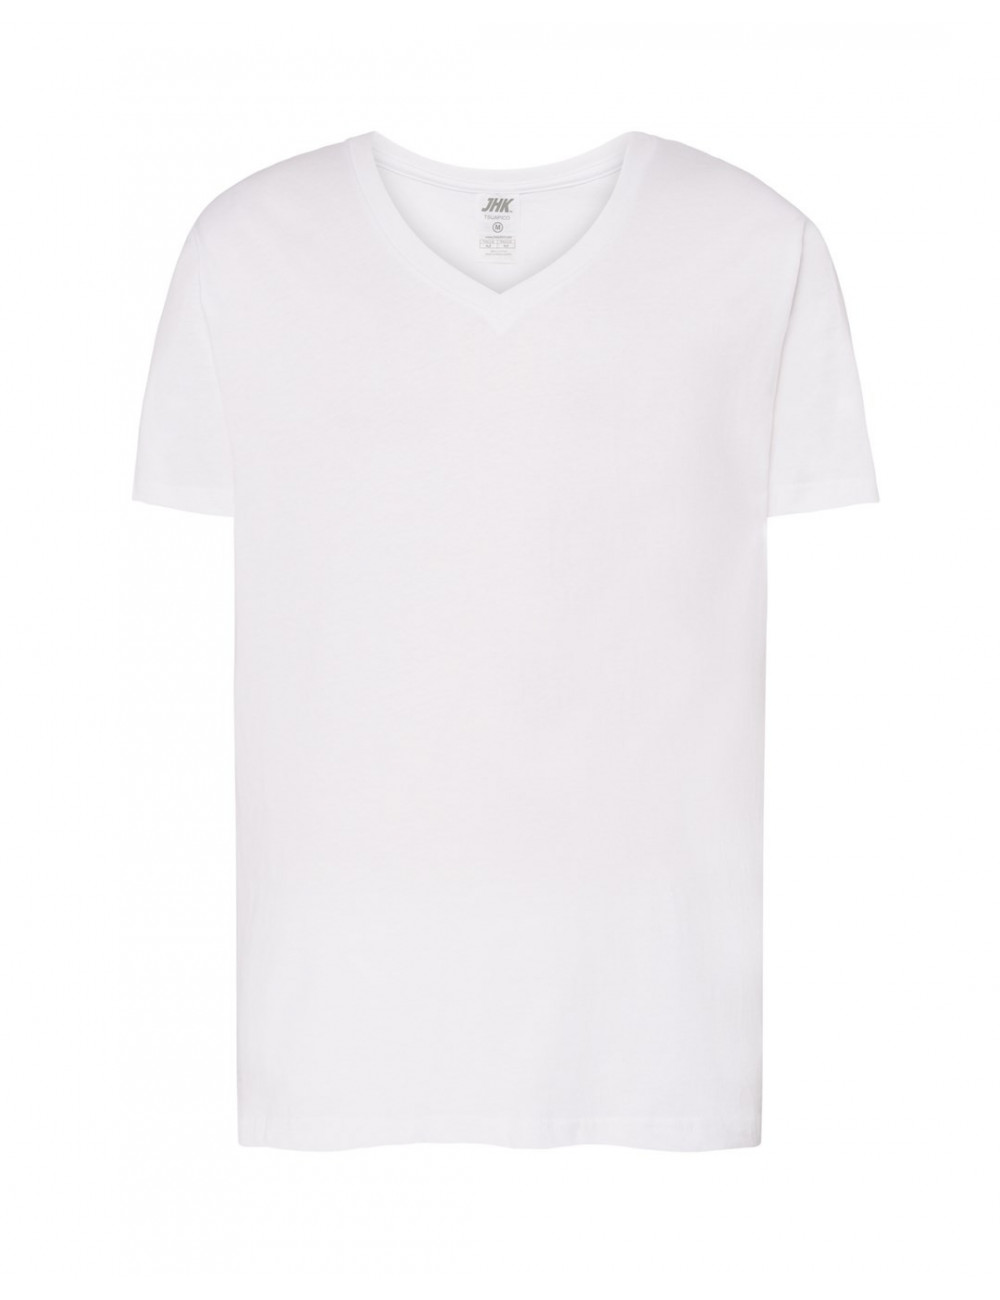 Tsua Pico Urban Herren-T-Shirt mit V-Ausschnitt, weiß, Jhk